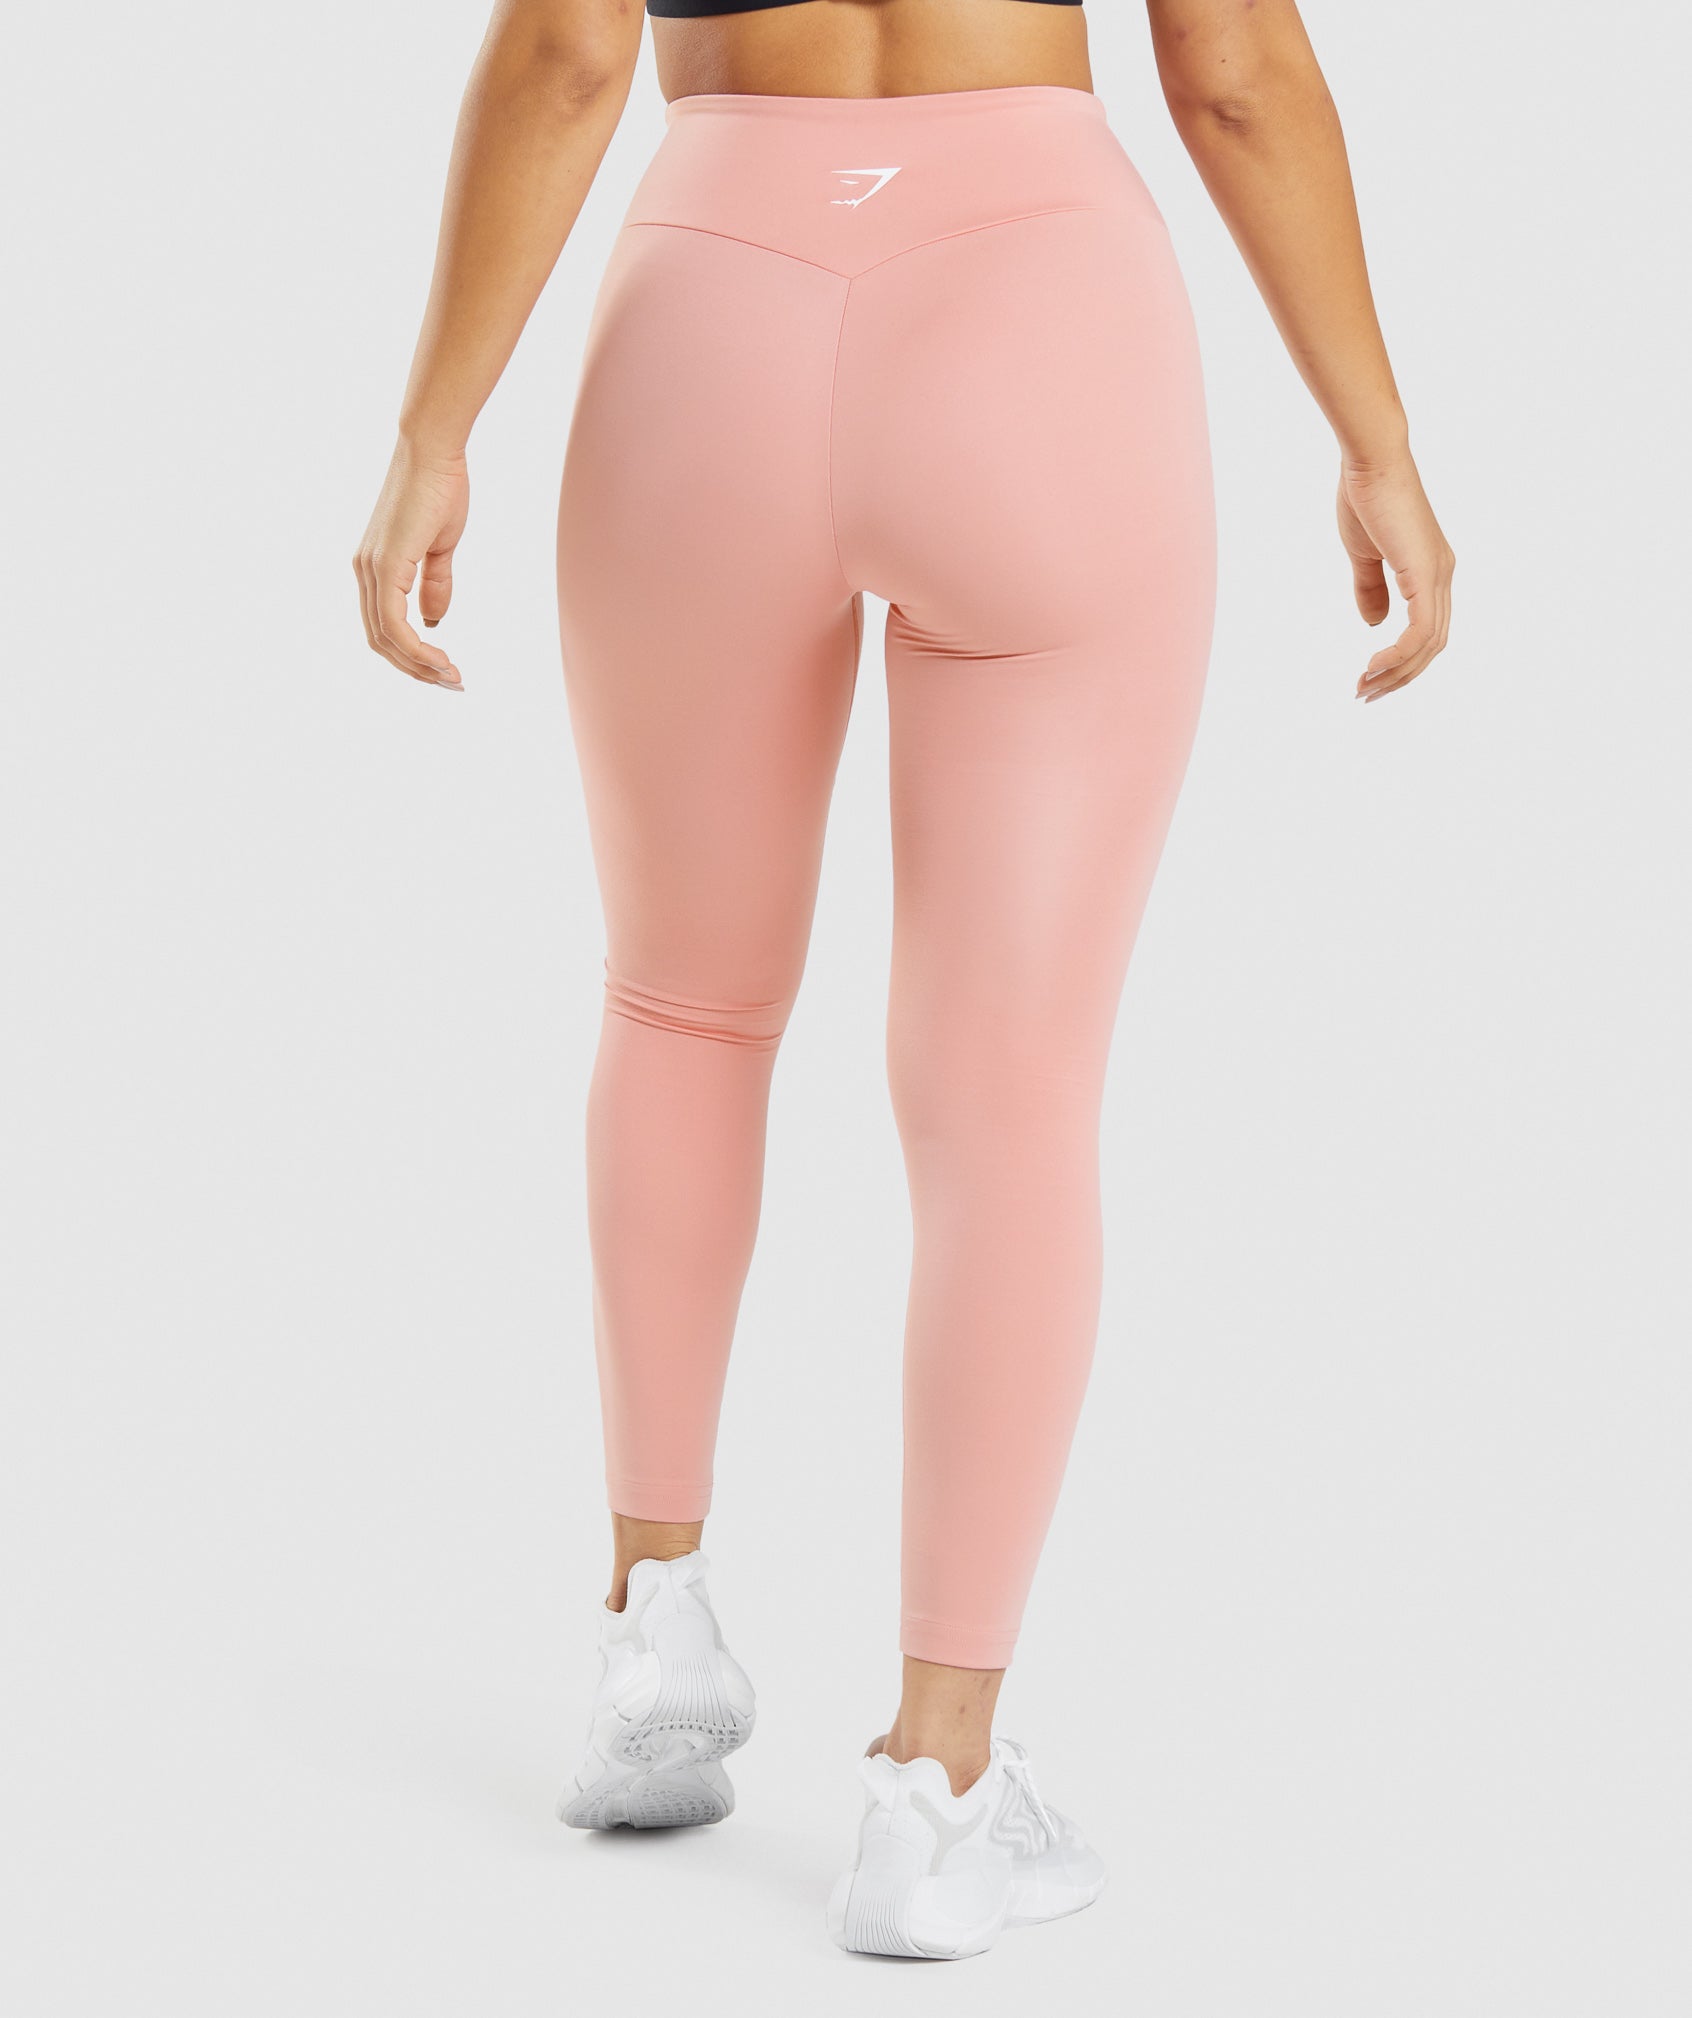 Pink Yoga pants Ballet Spirit Bandage Workout infinity Turnout Legging –  kdb solution